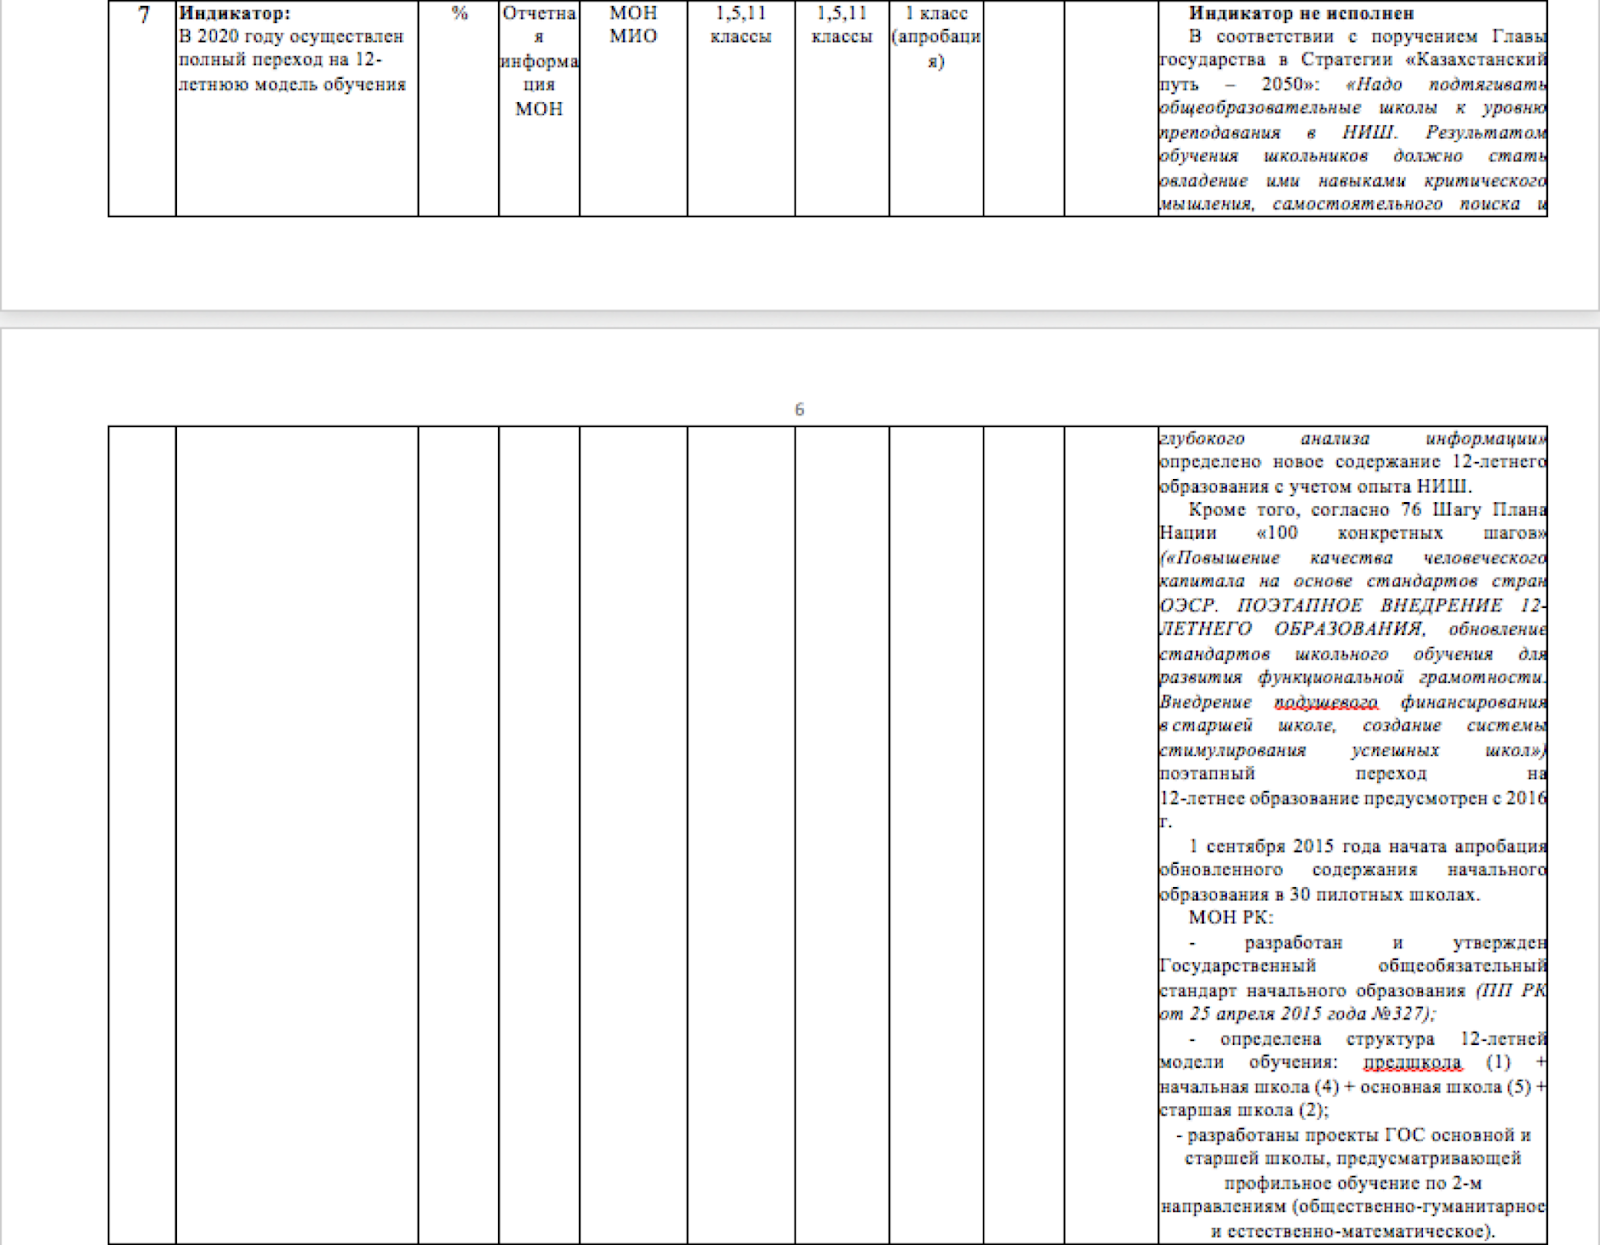 Реализация Государственной программы развития образования Республики Казахстан на 2011-2020 годы